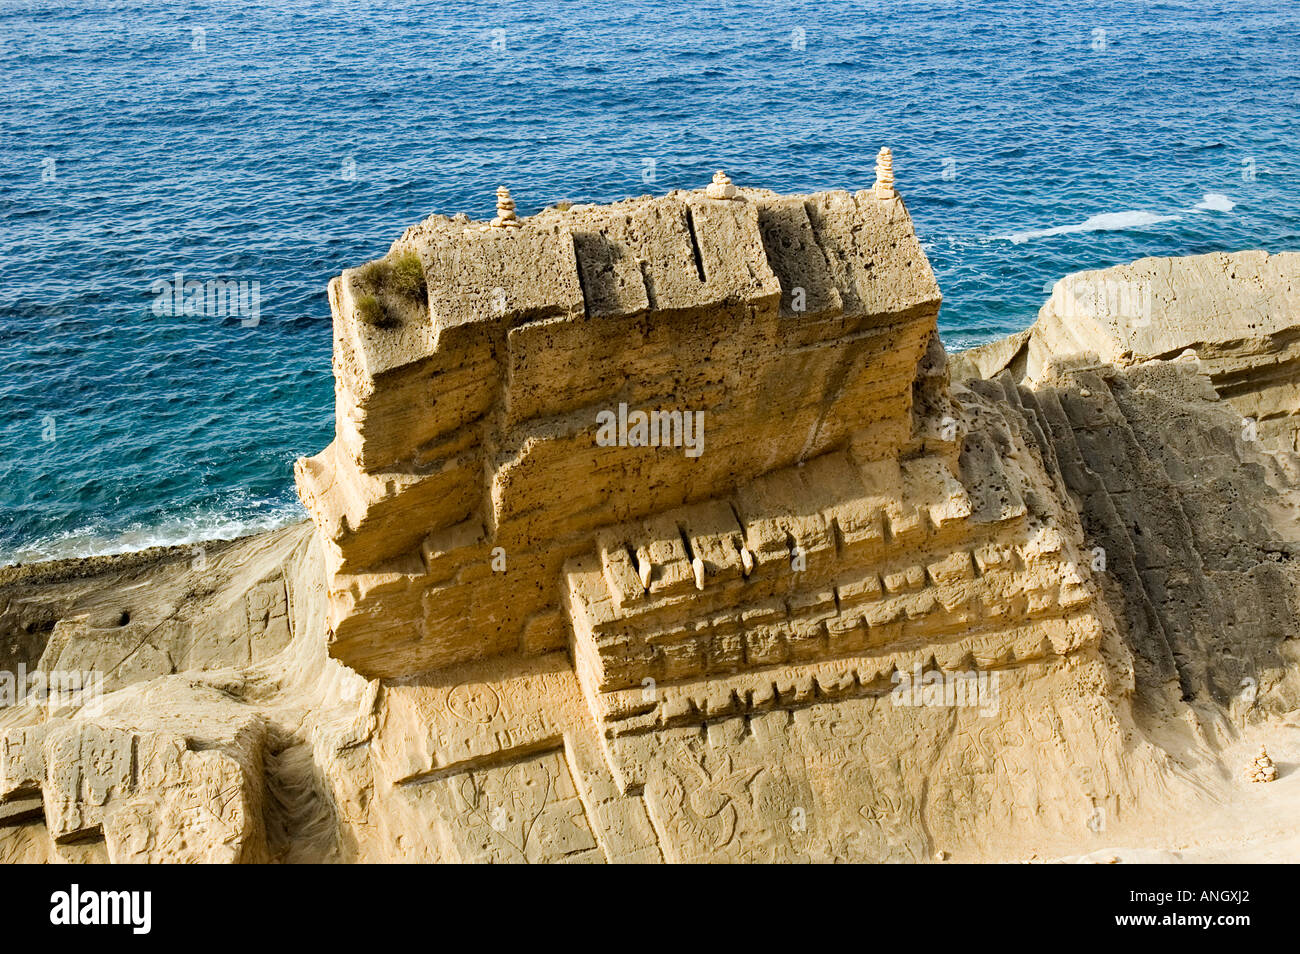 Ancinet cantera de piedra, Atlantis, Ibiza, España Foto de stock